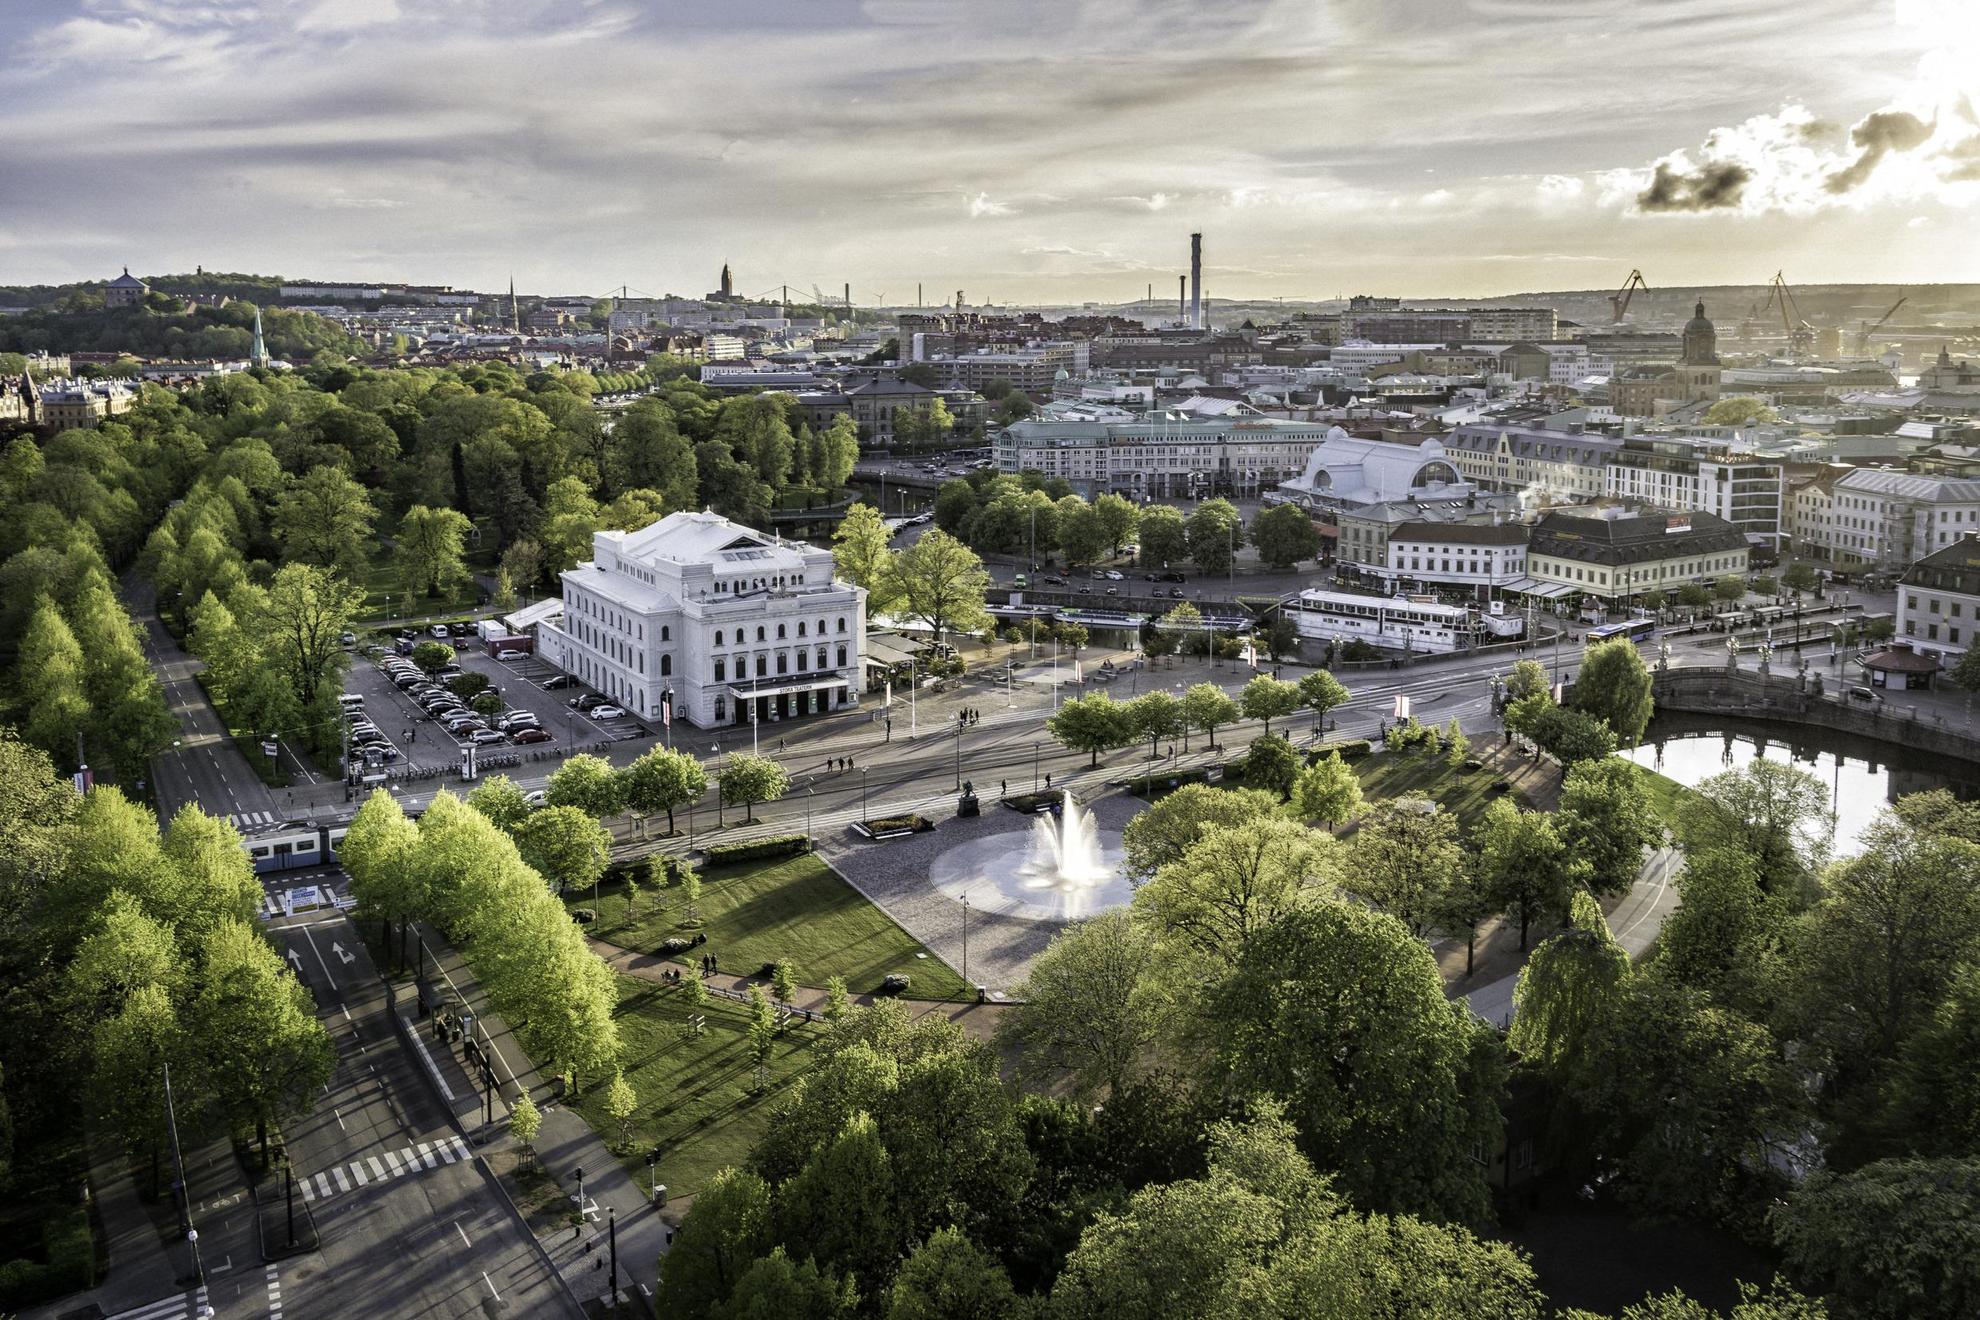 Göteborg aus der Vogelperspektive:  das weiße Haus des Großen Theaters ist von Wasserzügen und grünen Bäumen umgeben.